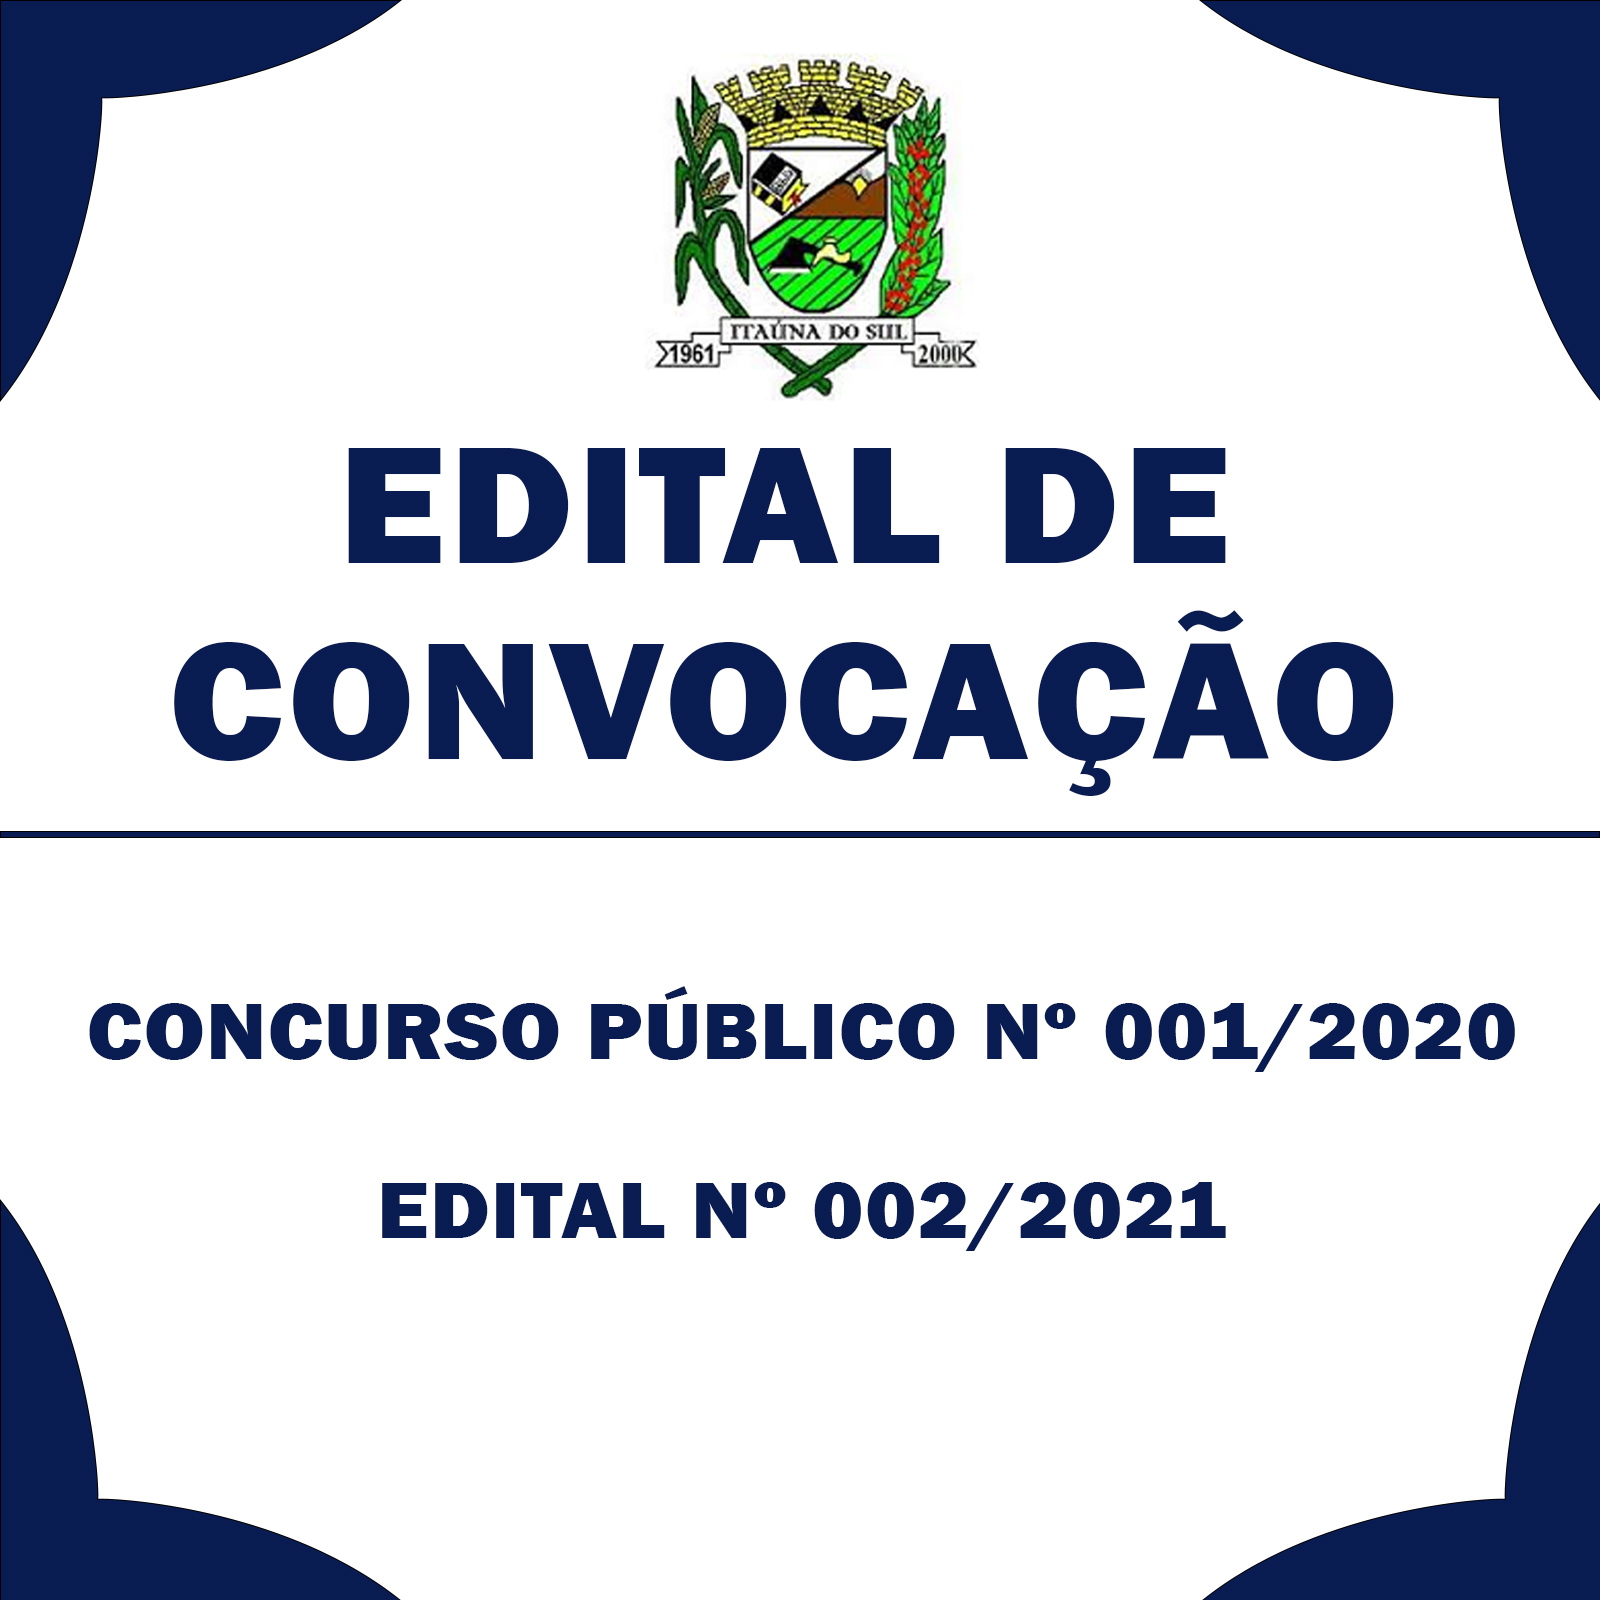 Edital de convocação do Concurso Público nº 001/2020.